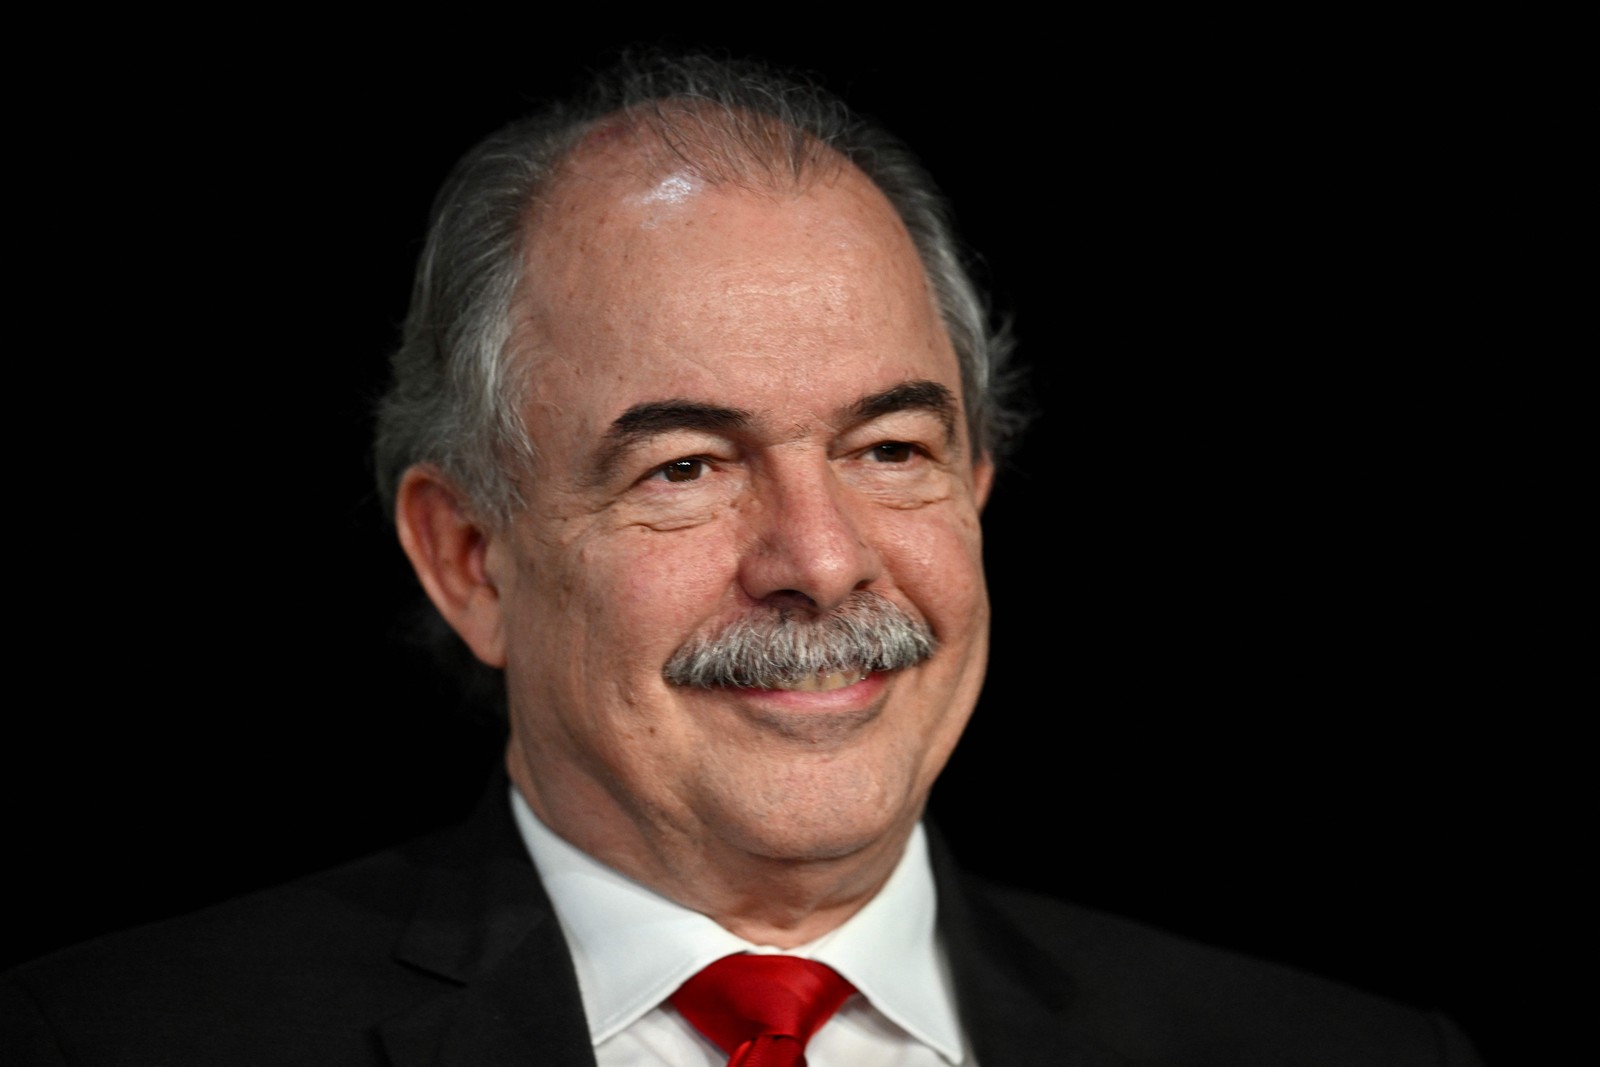 Aloizio Mercadante foi nomeado para presidir o Banco Nacional de Desenvolvimento Econômico e Social (BNDES) — Foto: EVARISTO SA / AFP